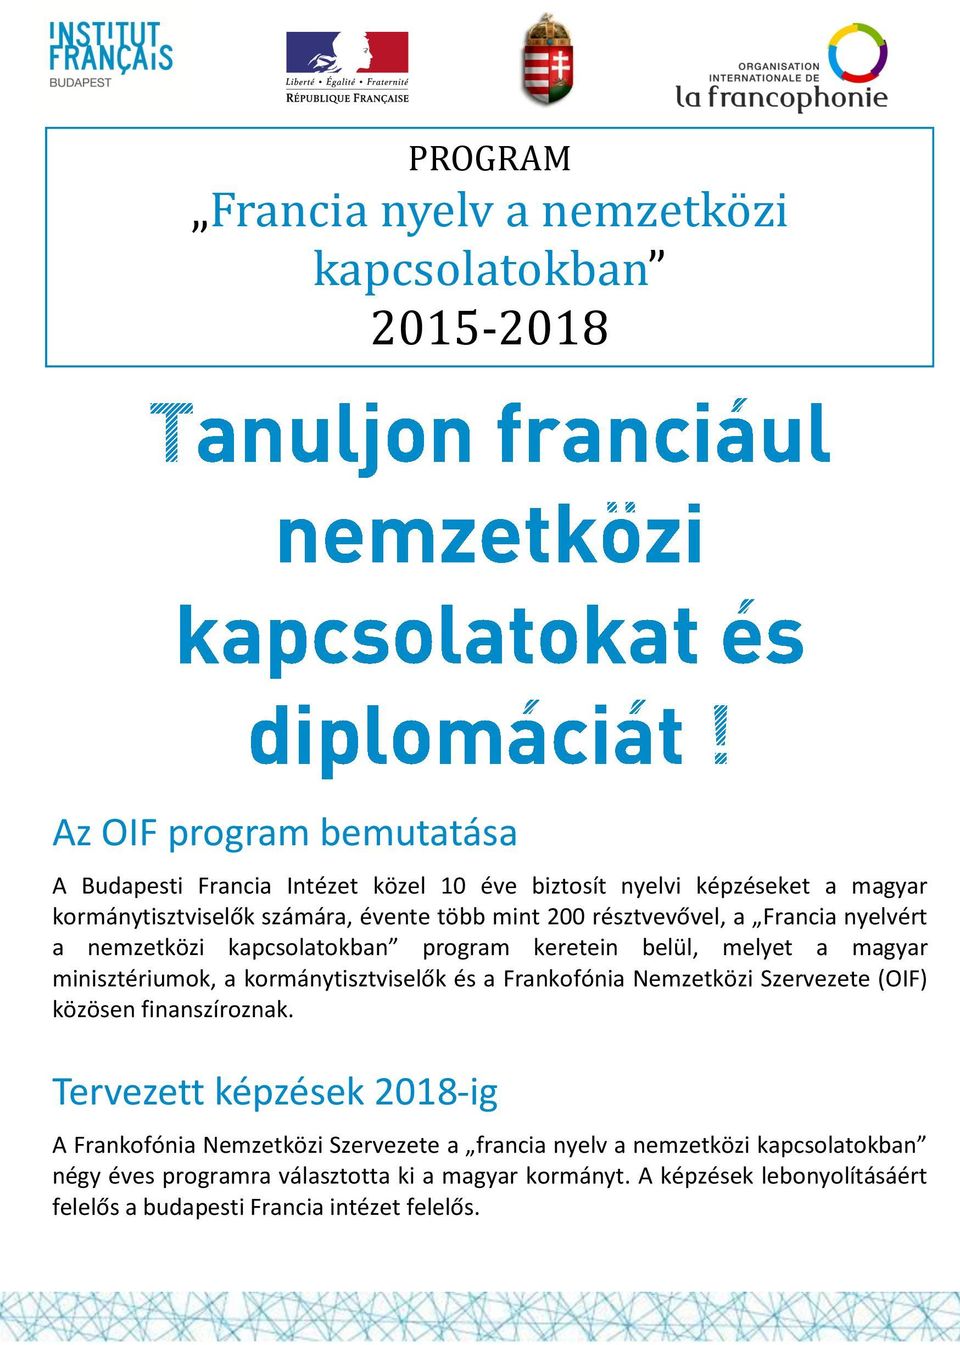 minisztériumok, a kormánytisztviselők és a Frankofónia Nemzetközi Szervezete (OIF) közösen finanszíroznak.